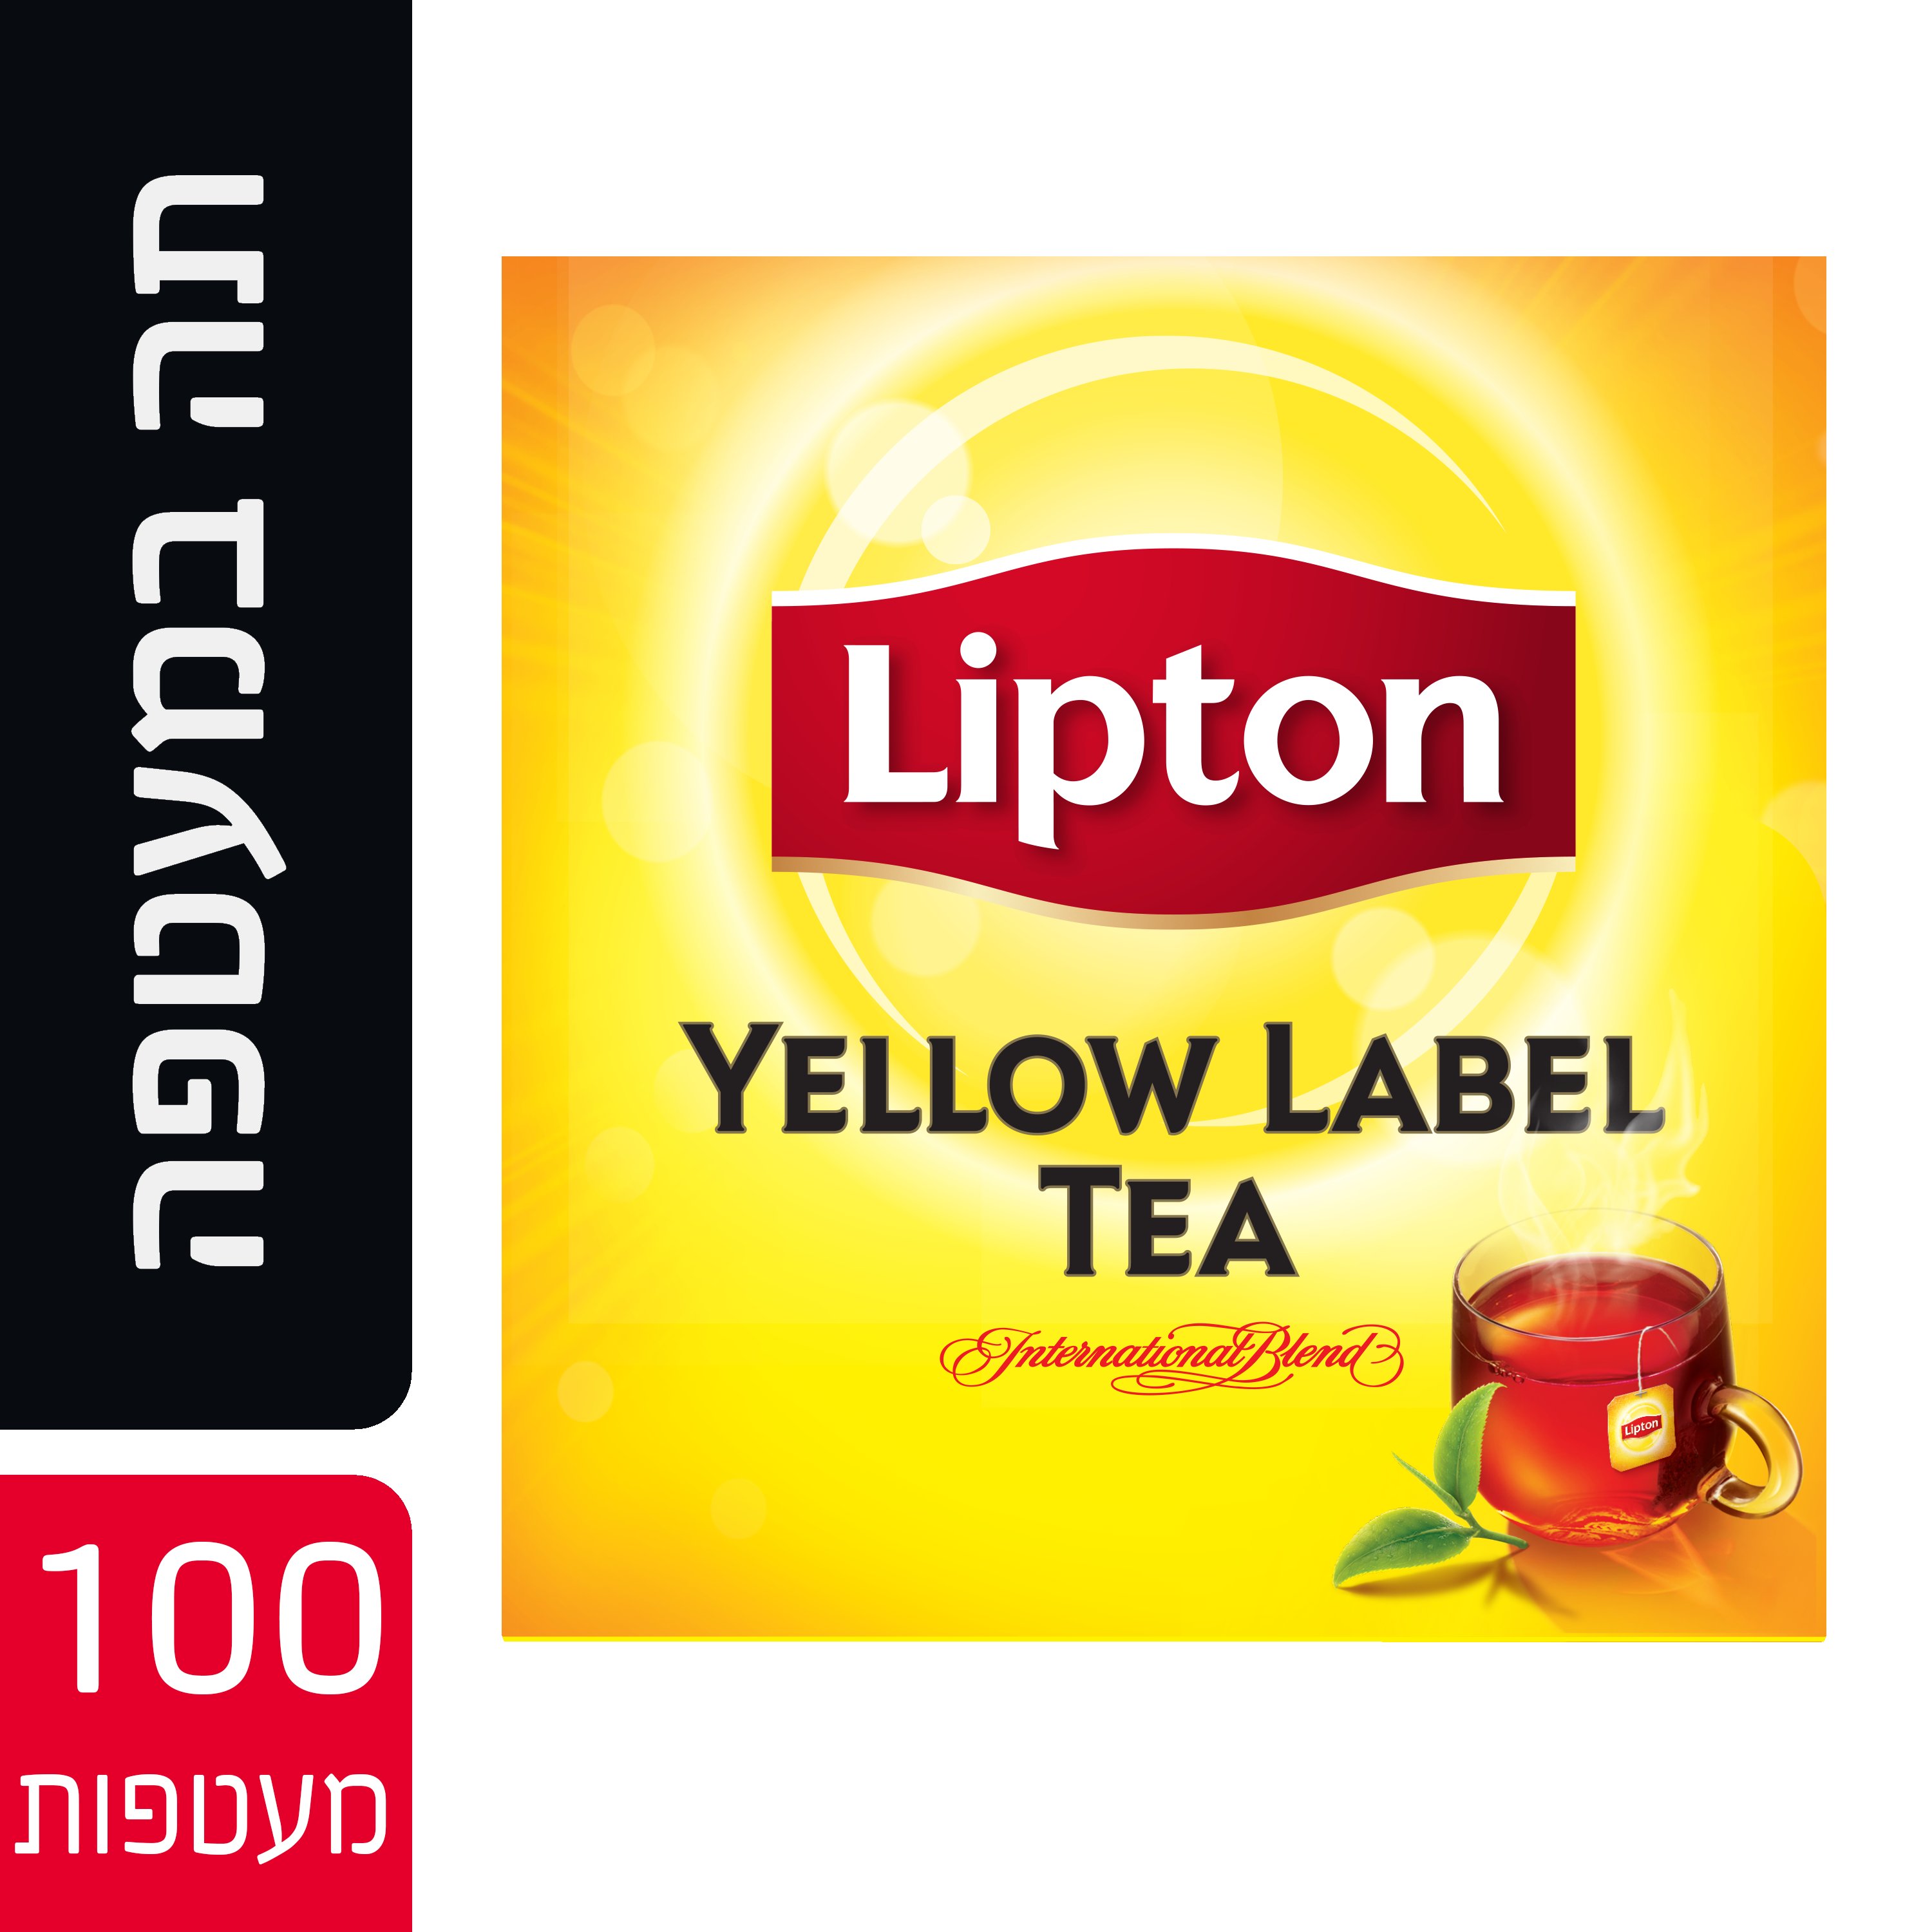 תה שחור ילו לייבל במעטפה ליפטון 100 יחידות - 